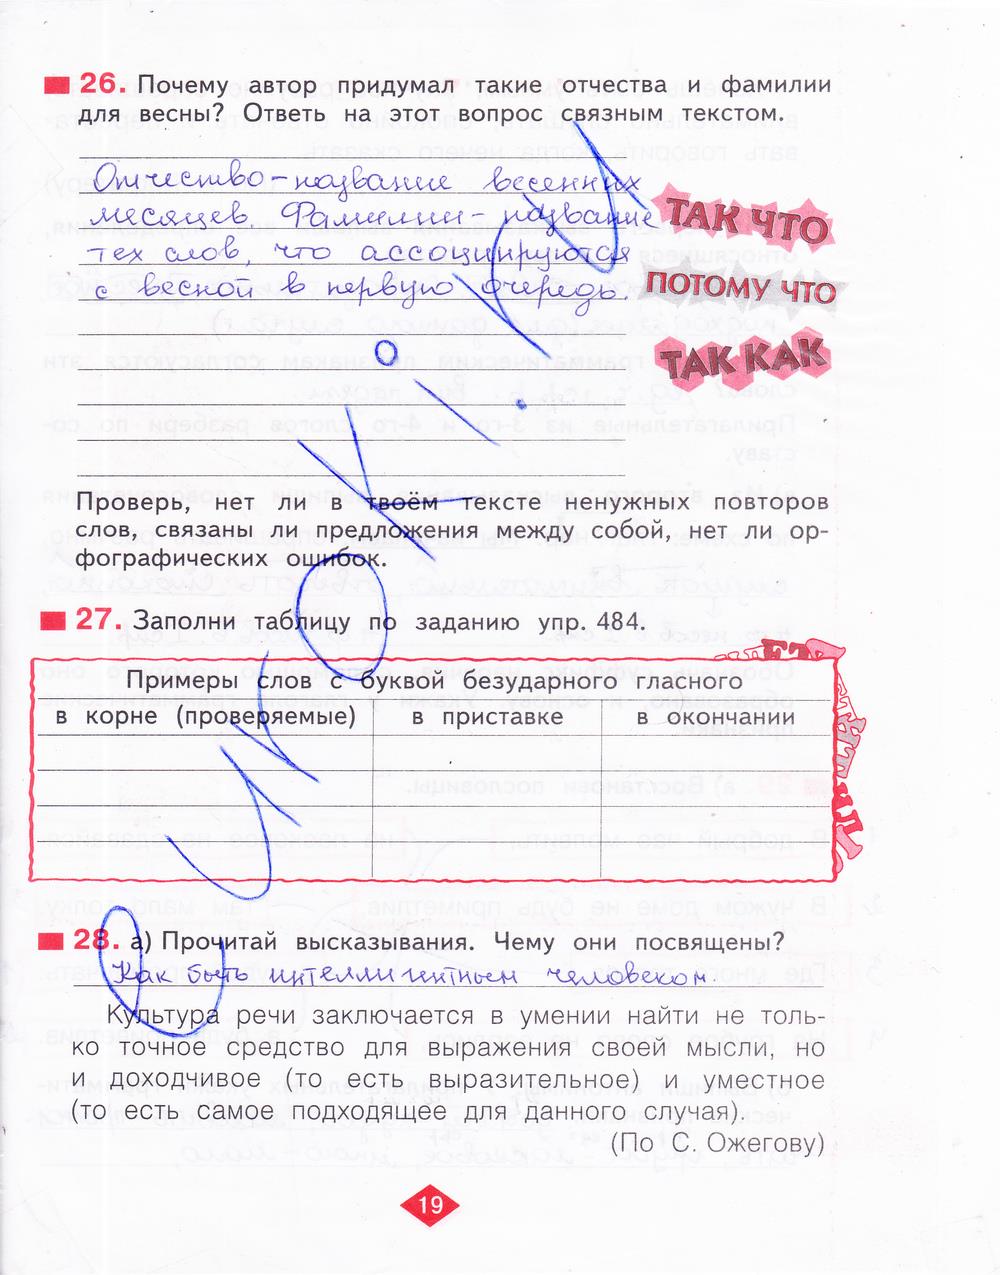 гдз 4 класс рабочая тетрадь часть 4 страница 19 русский язык Нечаева, Воскресенская